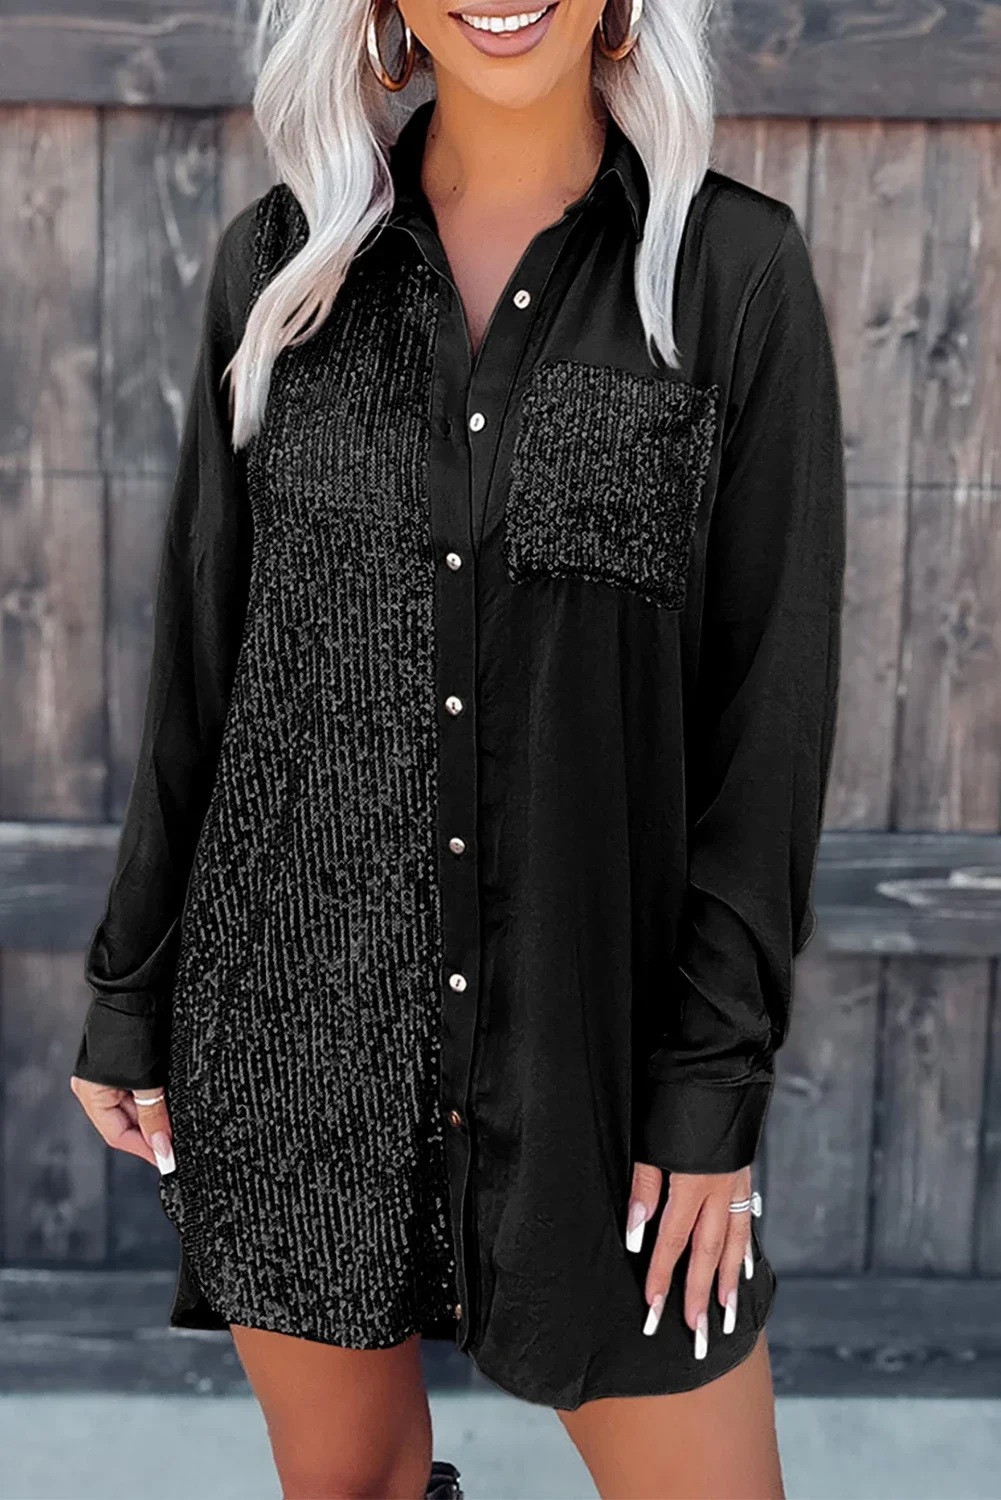 

Khaki/Black Sequin Splicing Pocket Buttoned Shirt Dress for Women Summer Party Club Short Dress